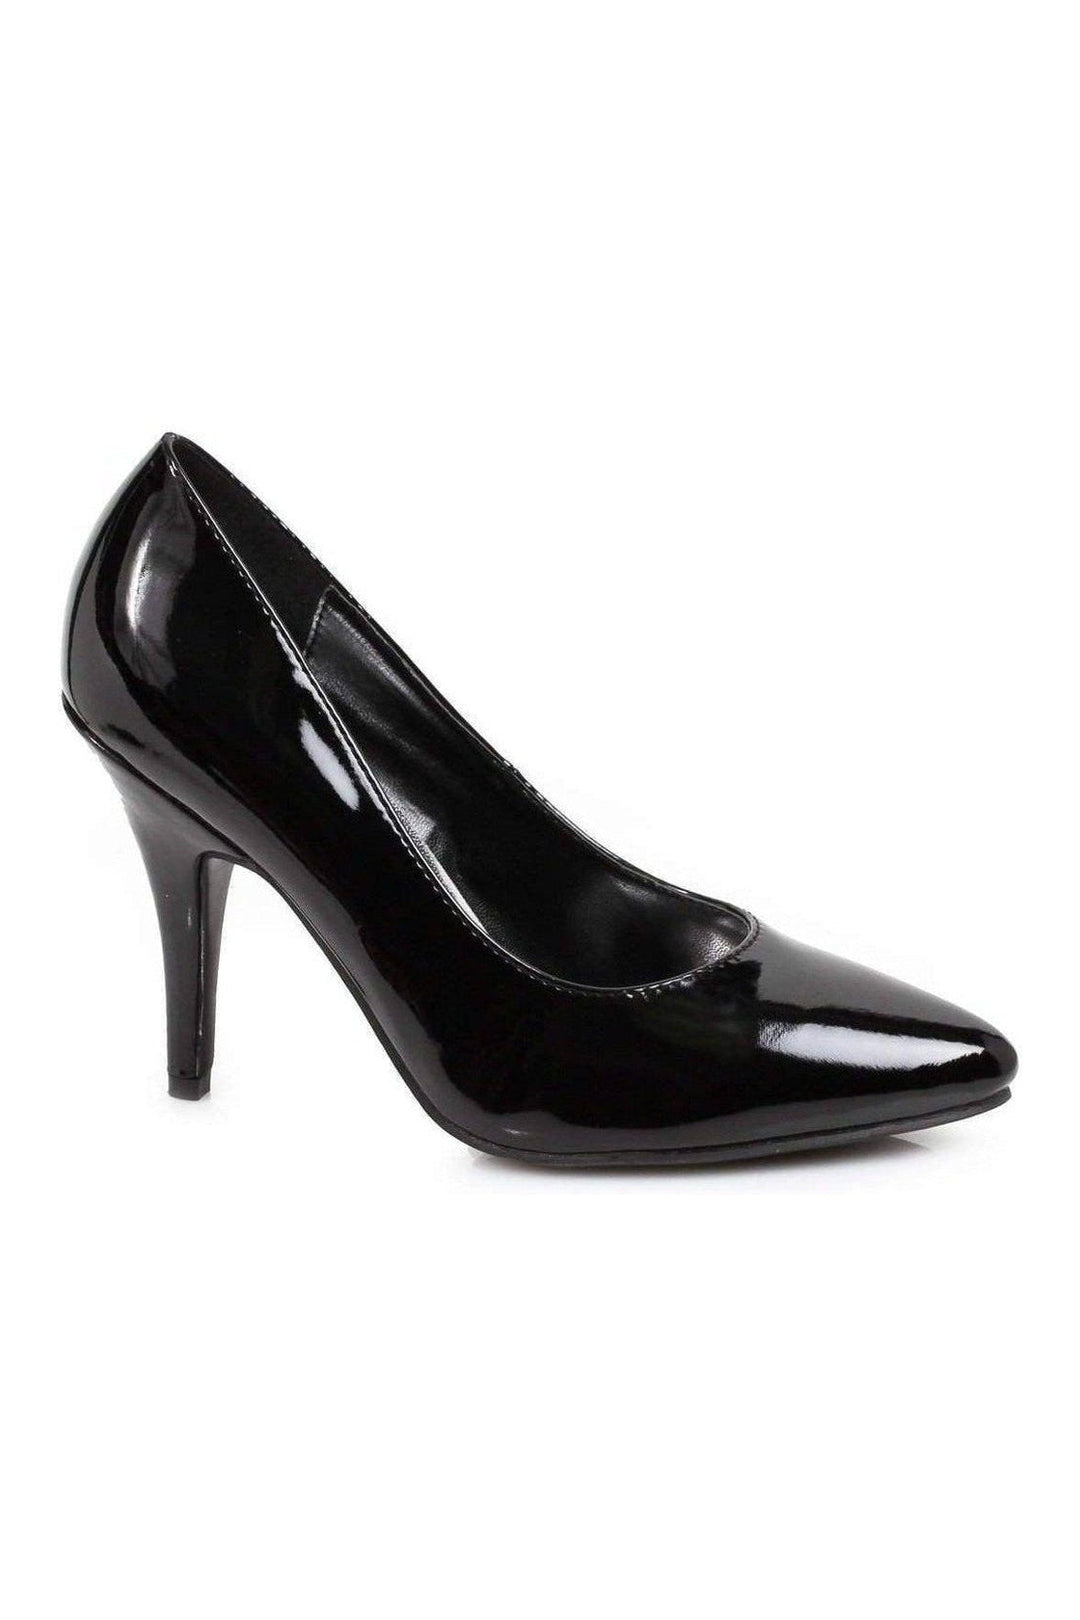 8400 Pump | Black Patent-Ellie Shoes-SEXYSHOES.COM